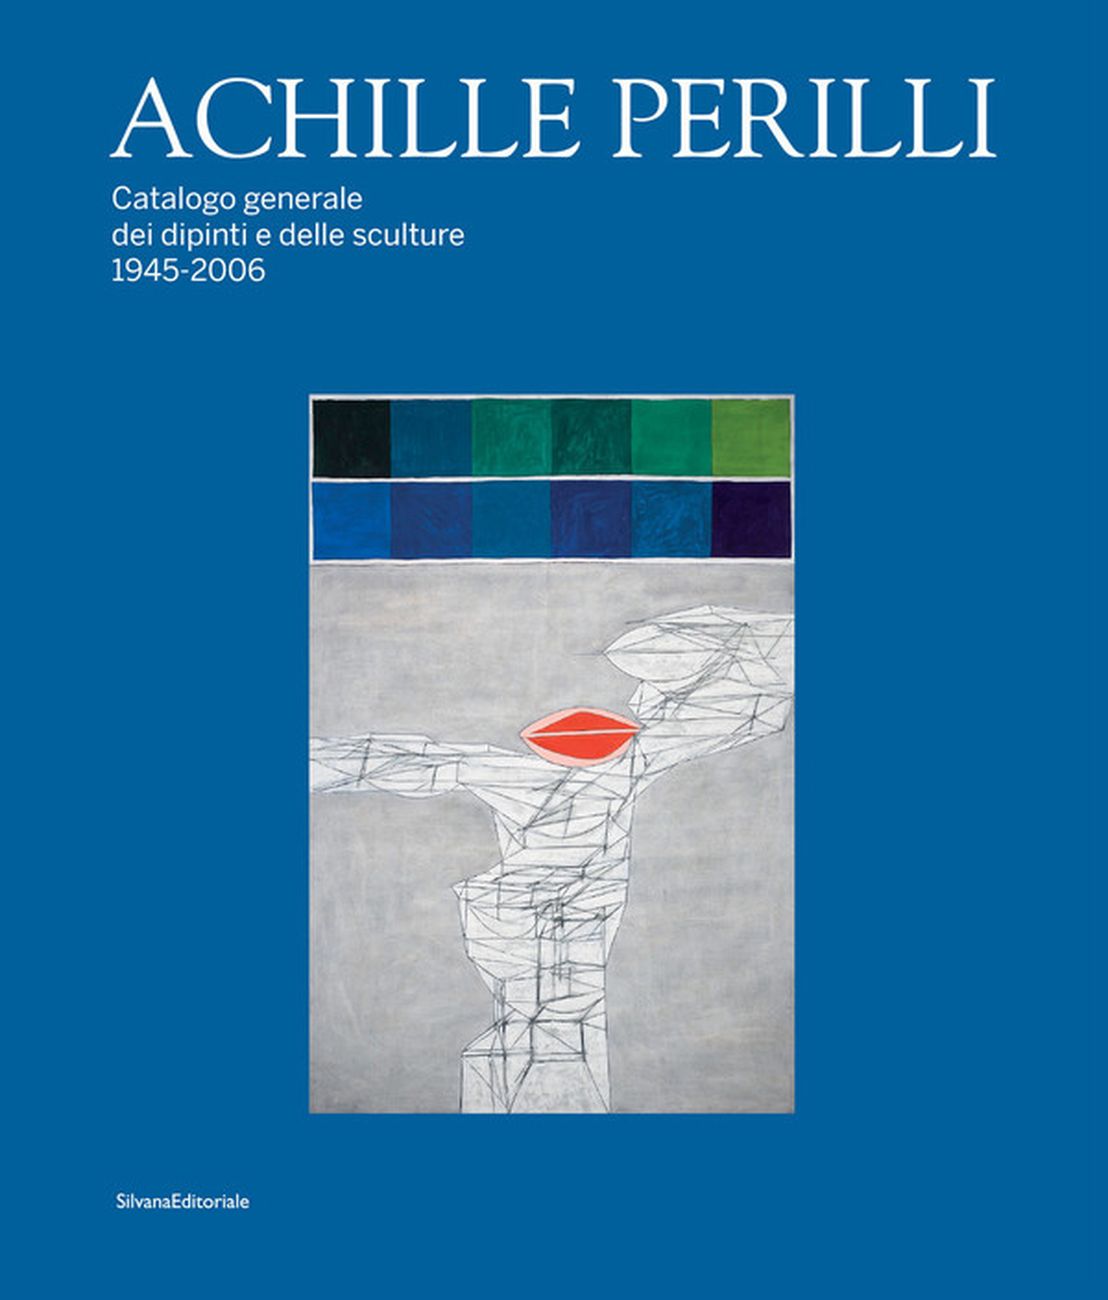 Giuseppe Appella – Achille Perilli. Catalogo generale dei dipinti e delle sculture (Silvana Editoriale, Cinisello Balsamo 2019)